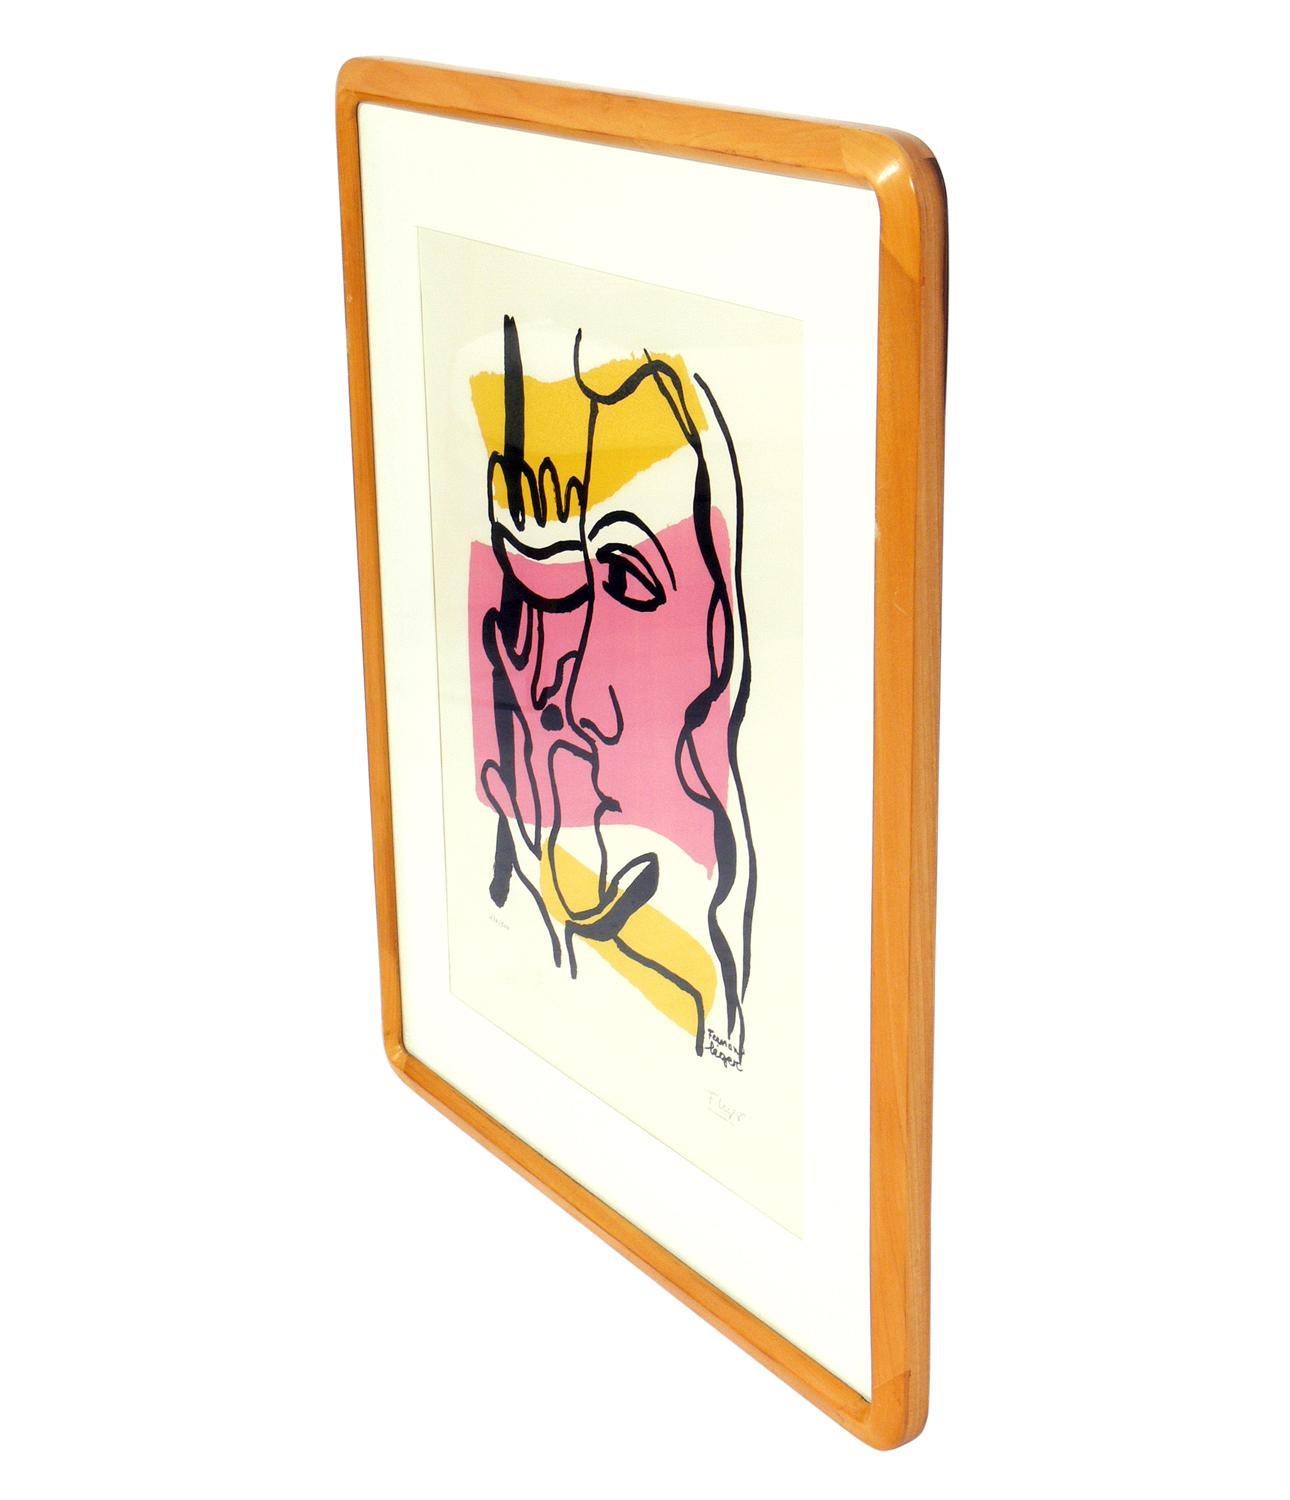 Abstraktes Farbpochoir nach Fernand Léger, signiert und nummeriert 120 aus der limitierten Auflage von 500, herausgegeben vom Musee Fernand Leger, Biot, Frankreich. Die unten angegebene Größe ist die gerahmte Größe.